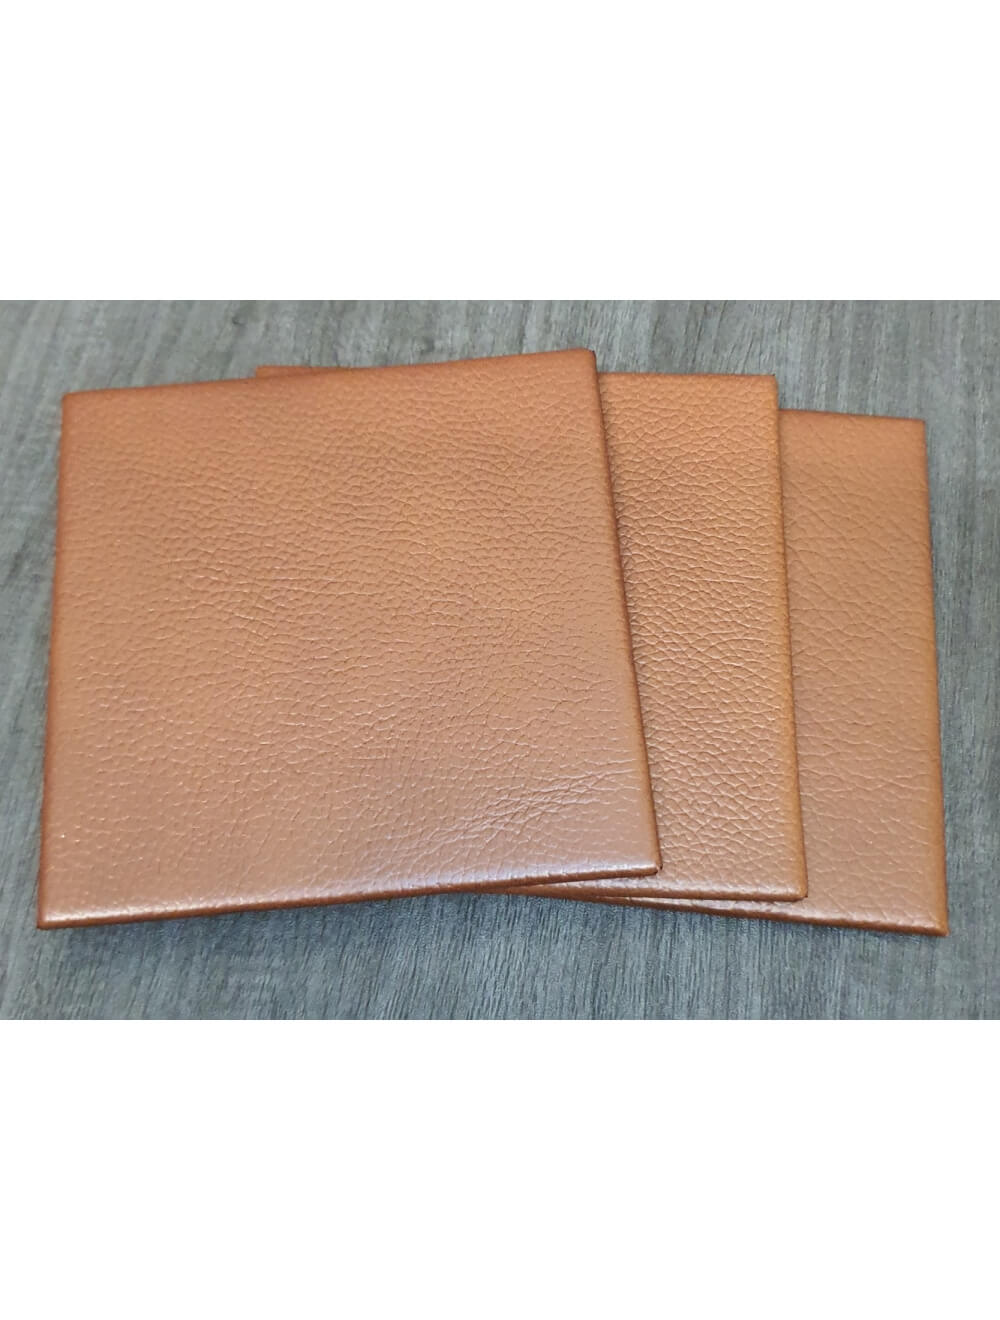 Castagna Shelly Leather Coaster- 10 cm Sq (articolo di vendita)